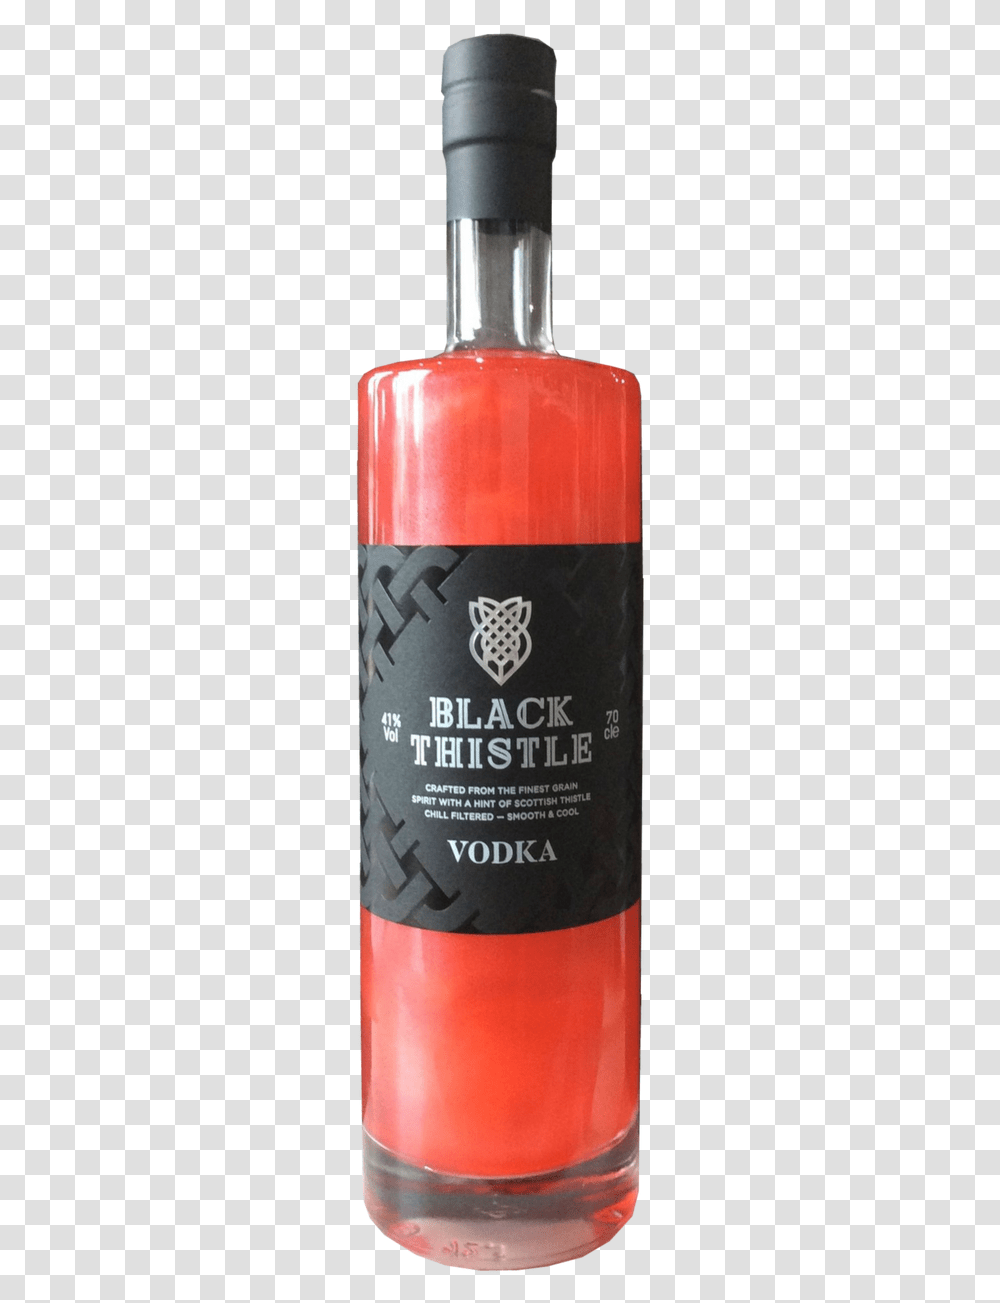 Black Thistle Red Mist Vodka Bottle, Alcohol, Beverage, Beer, Liquor Transparent Png